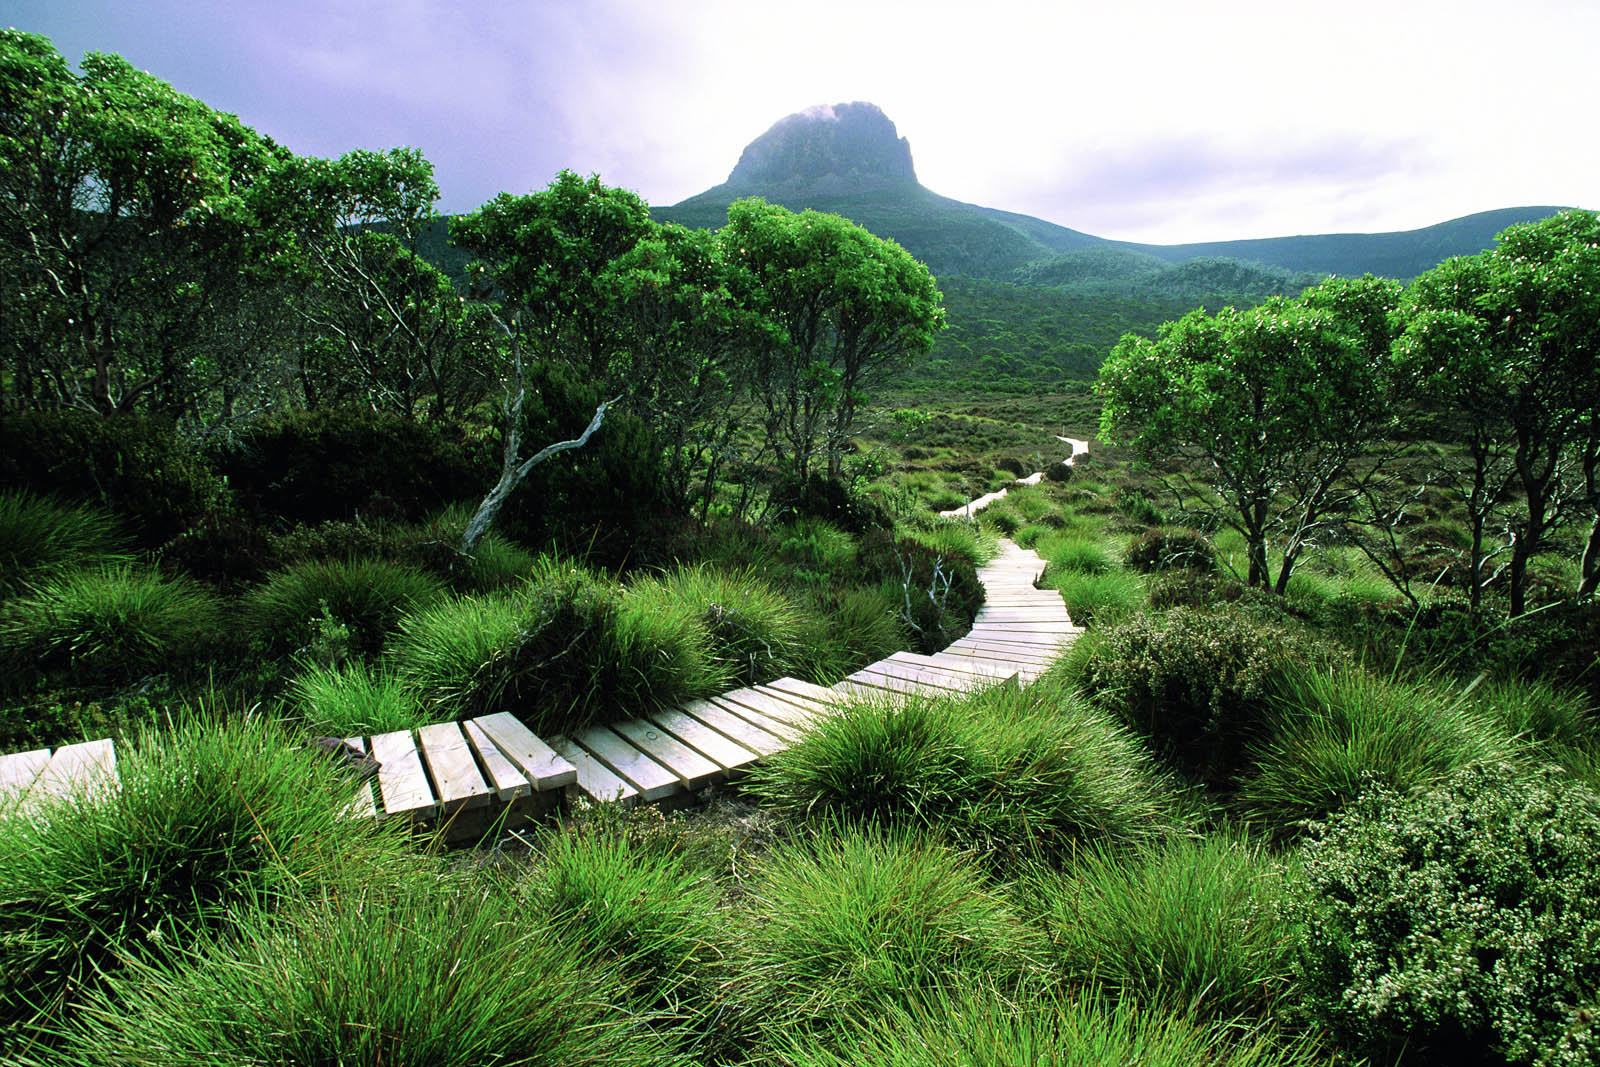 cradle-mountains-huts-walk-en-busca-del-demonio-de-tasmania.jpg